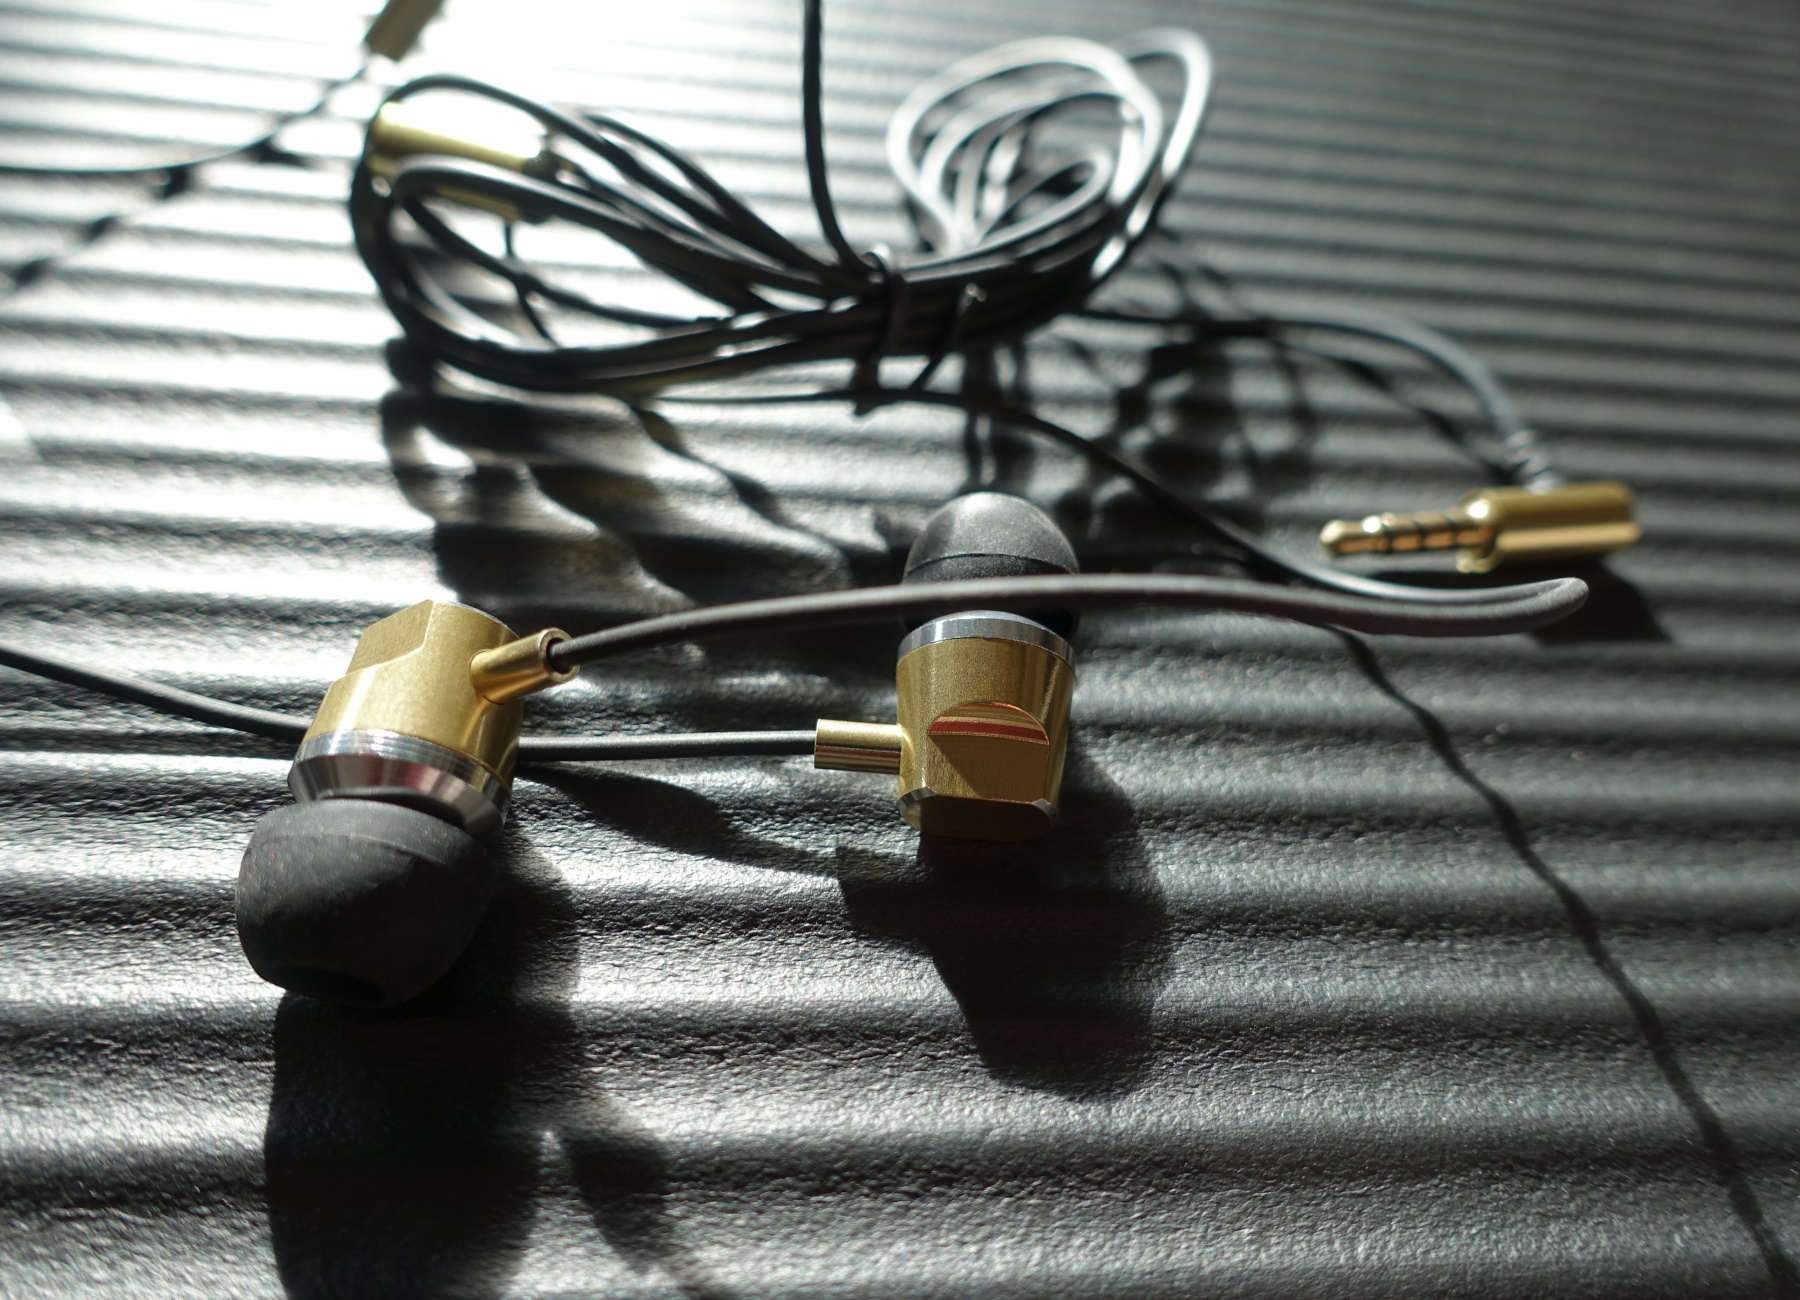 SCHWAIGER -KH410G 531-, In-ear mit Metallgehäuse und Gold Kopfhörer Slimkabel